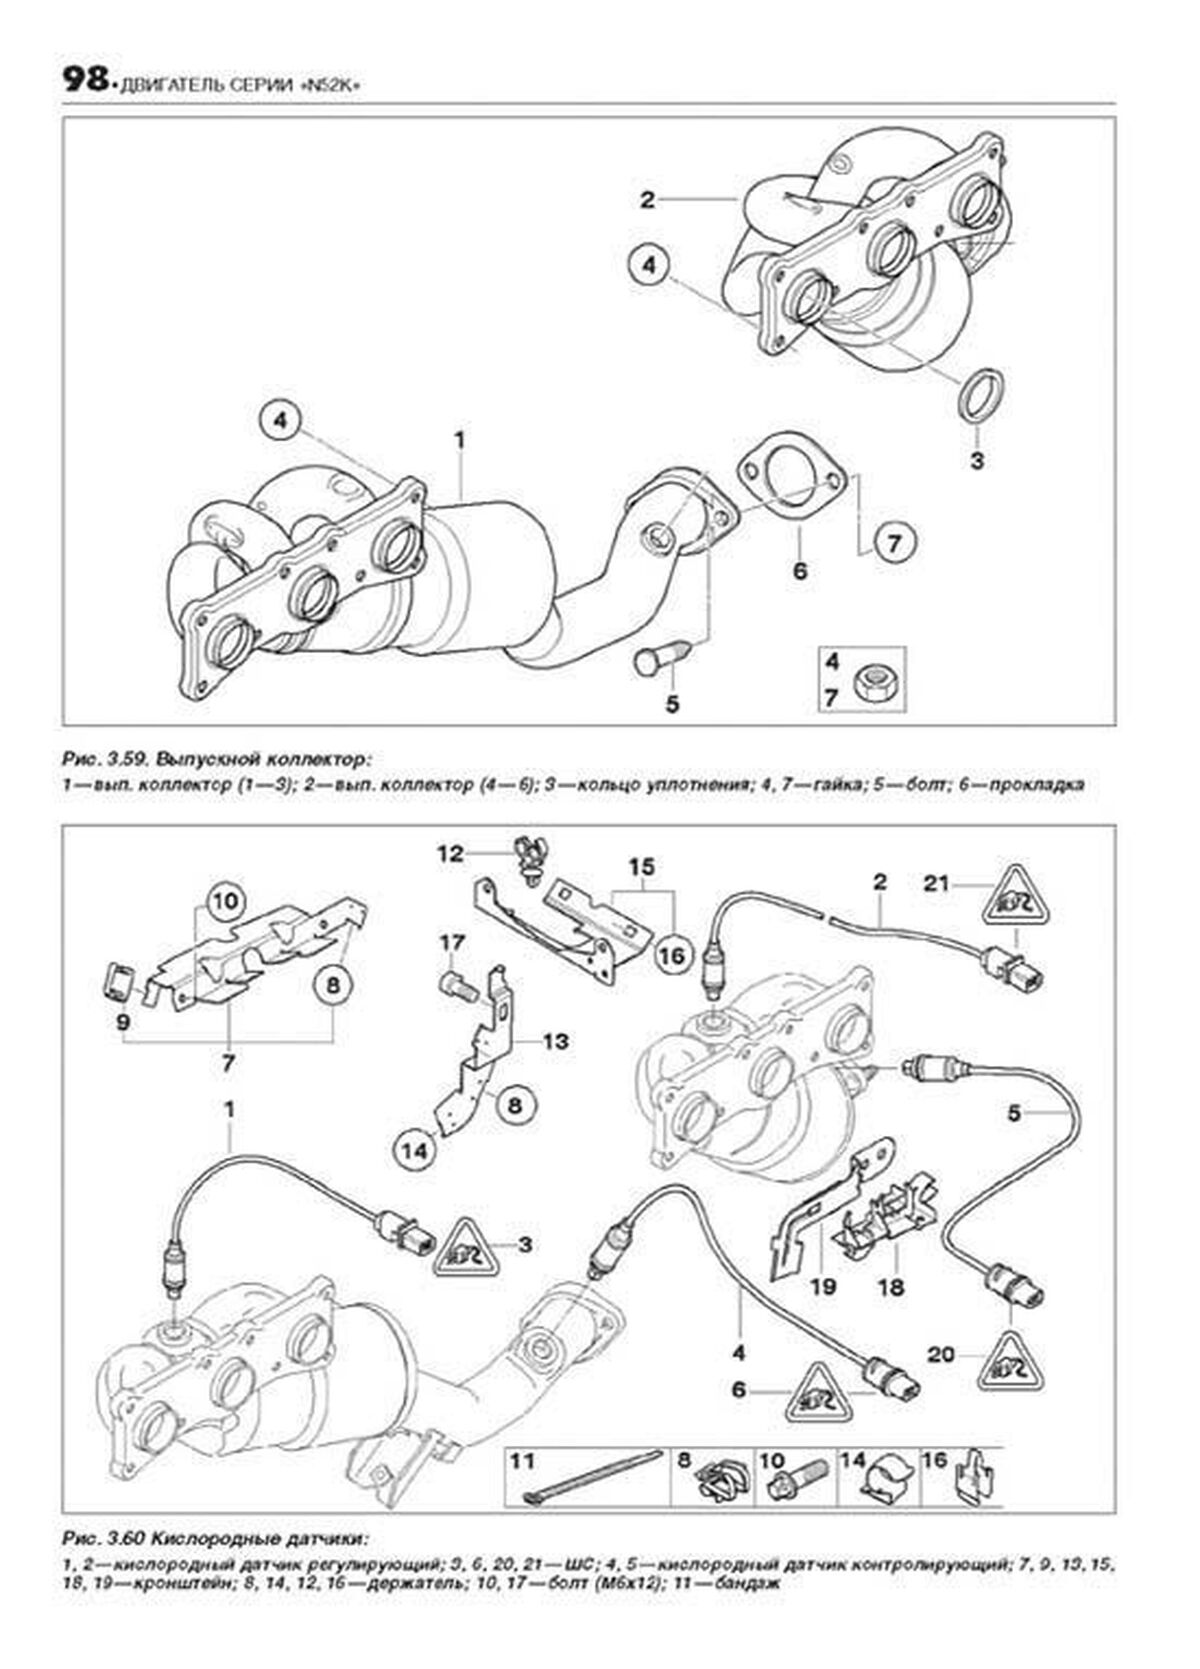 Книга: BMW X5 (E70) (б , д) c 2007 г.в., рем., экспл., то | Легион-Aвтодата